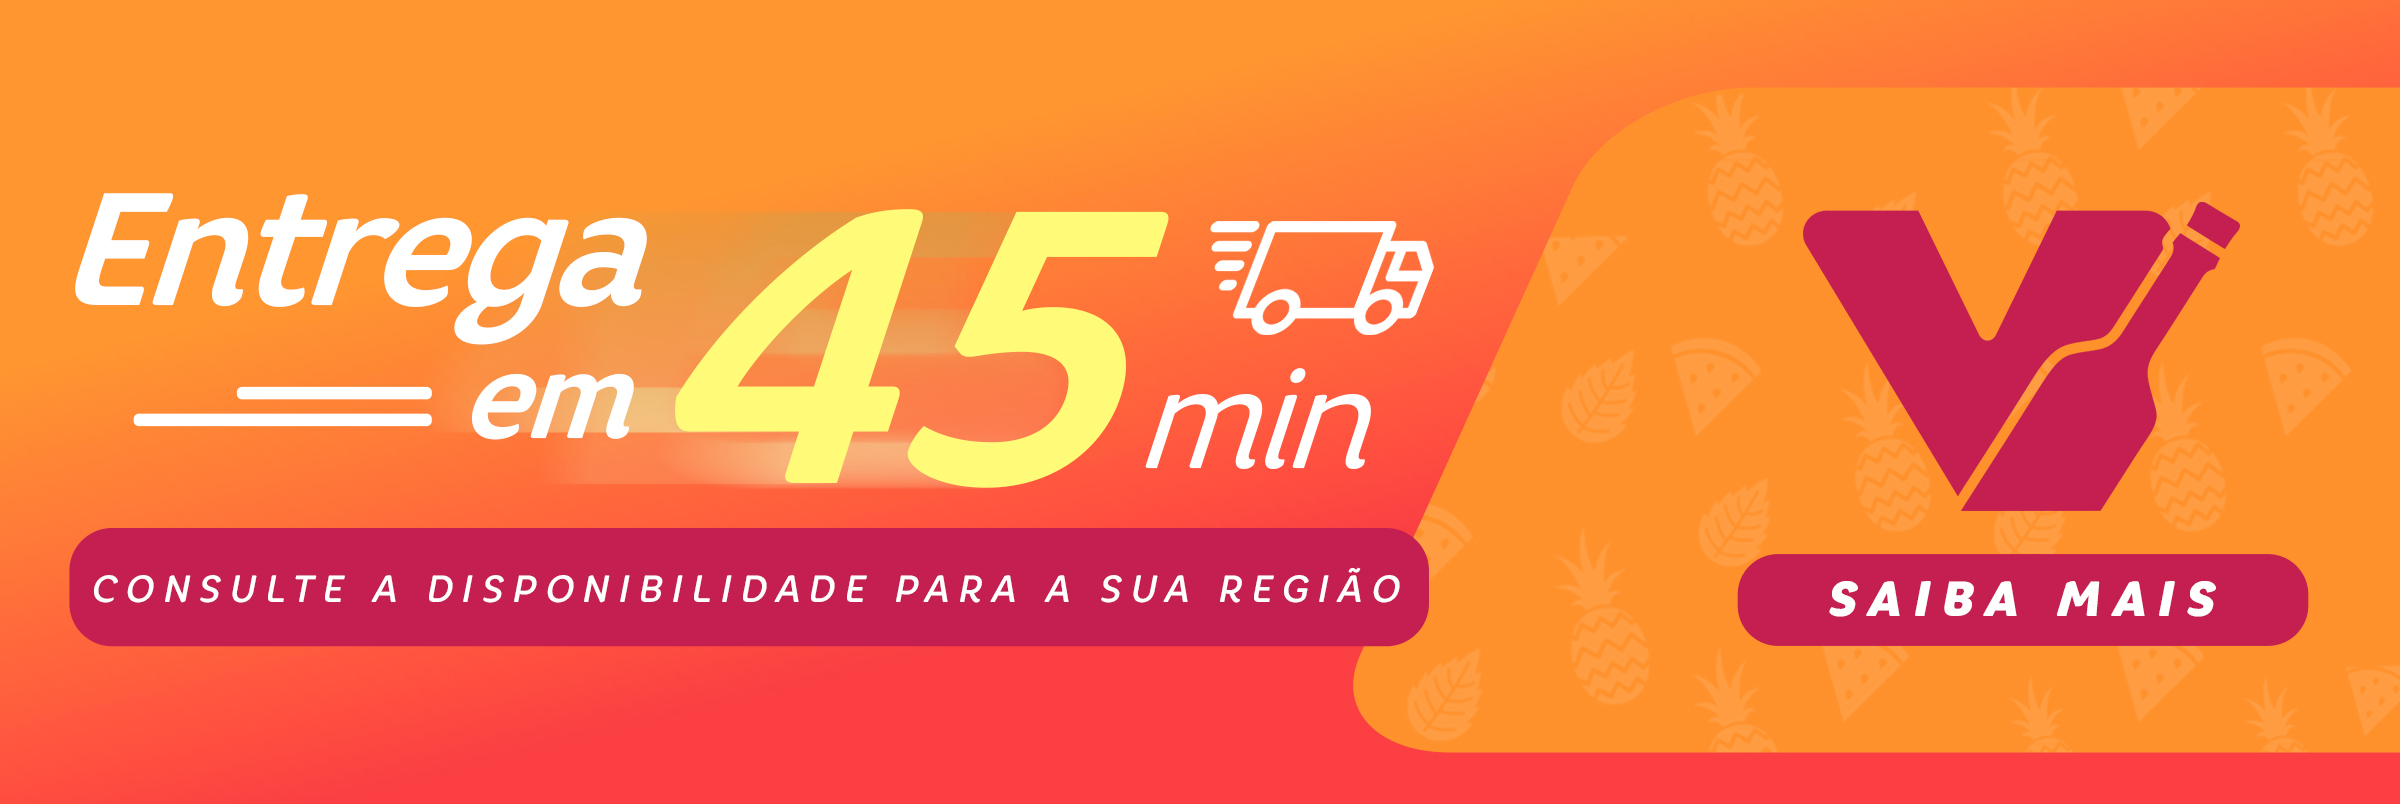 Entrega em 45 minutos para a região da Grande São Paulo